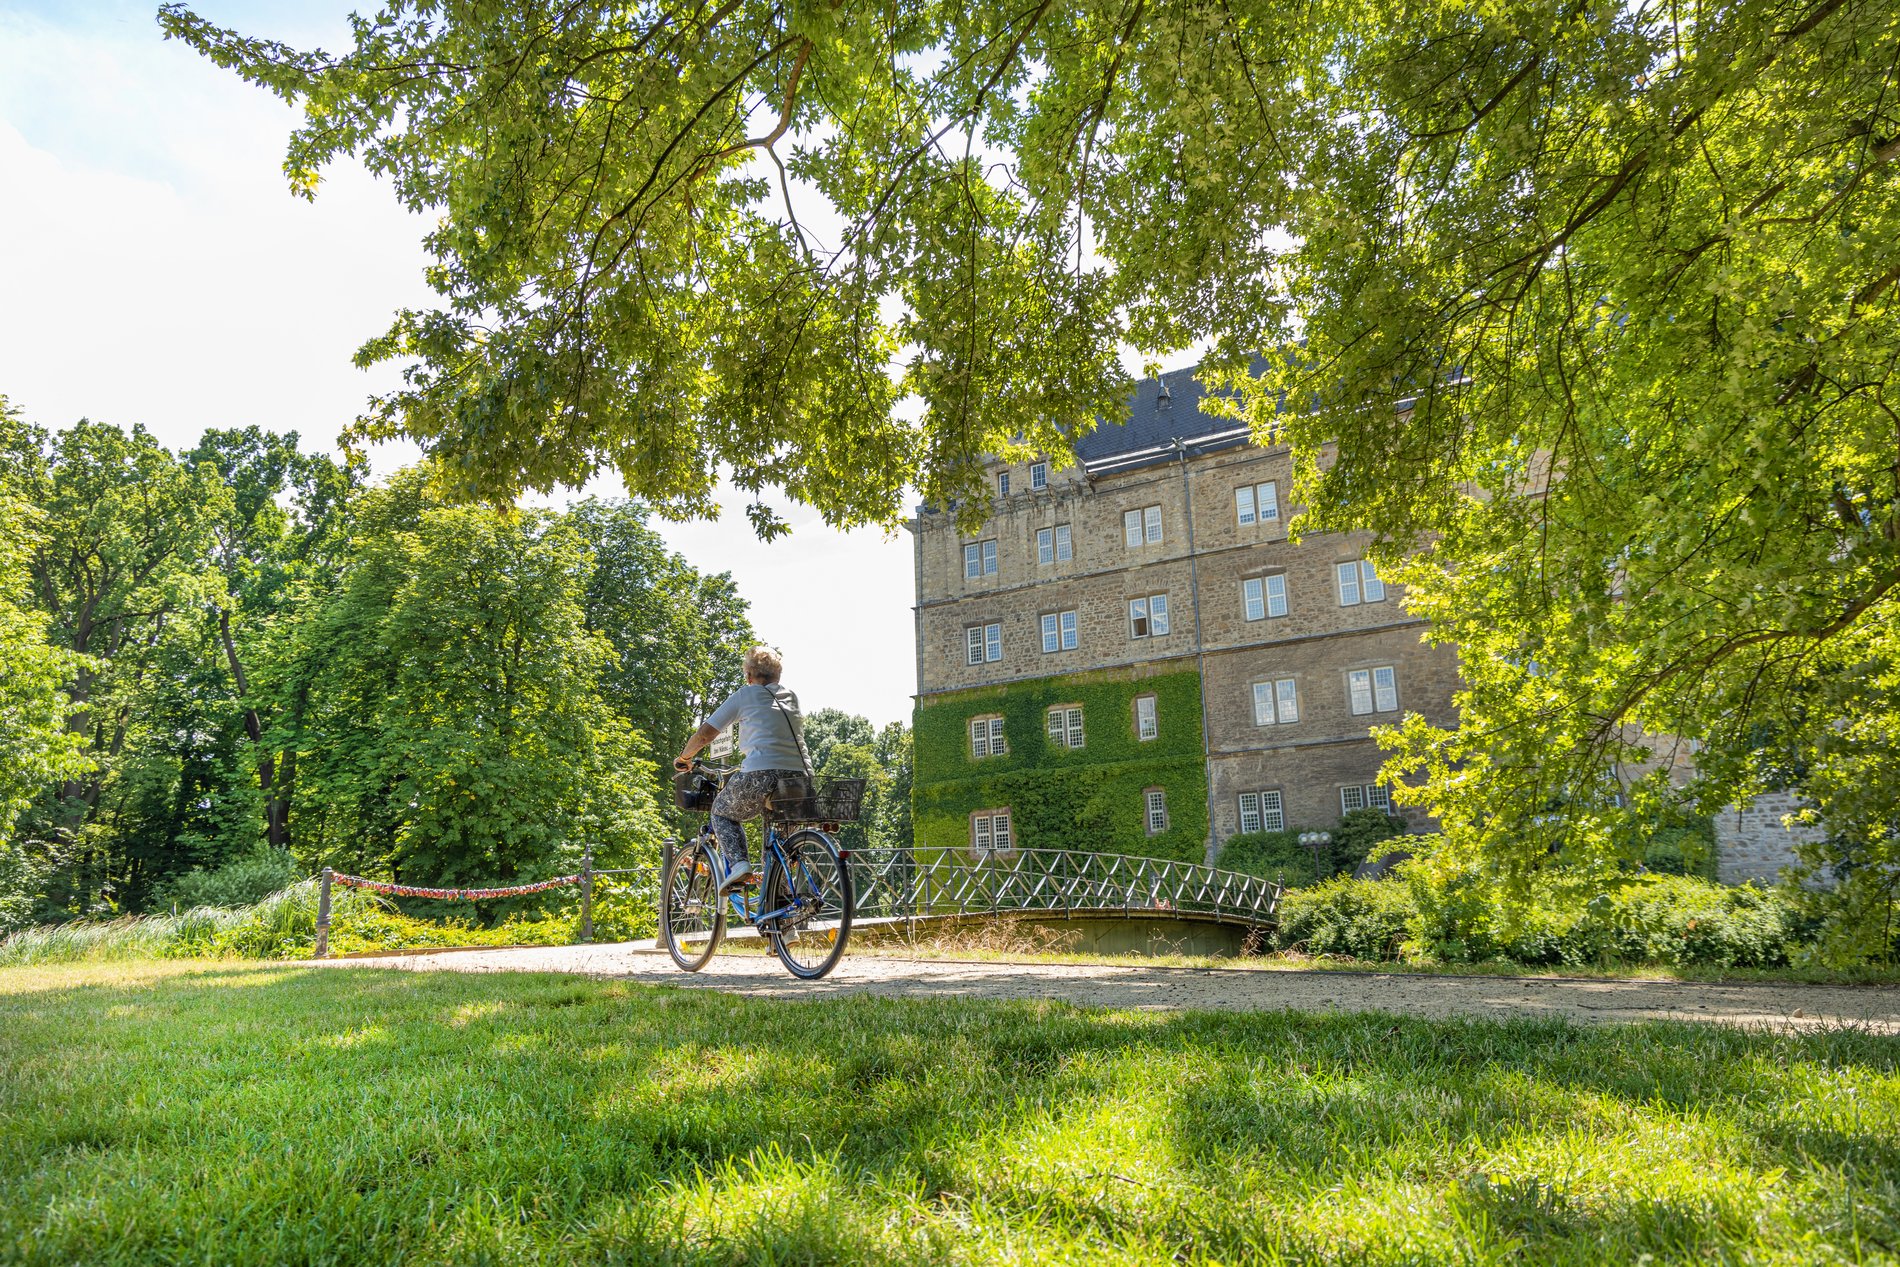 Man blickt auf einen Radfahrer, der durch eine Parkanlage am Schloss Fallersleben fährt.